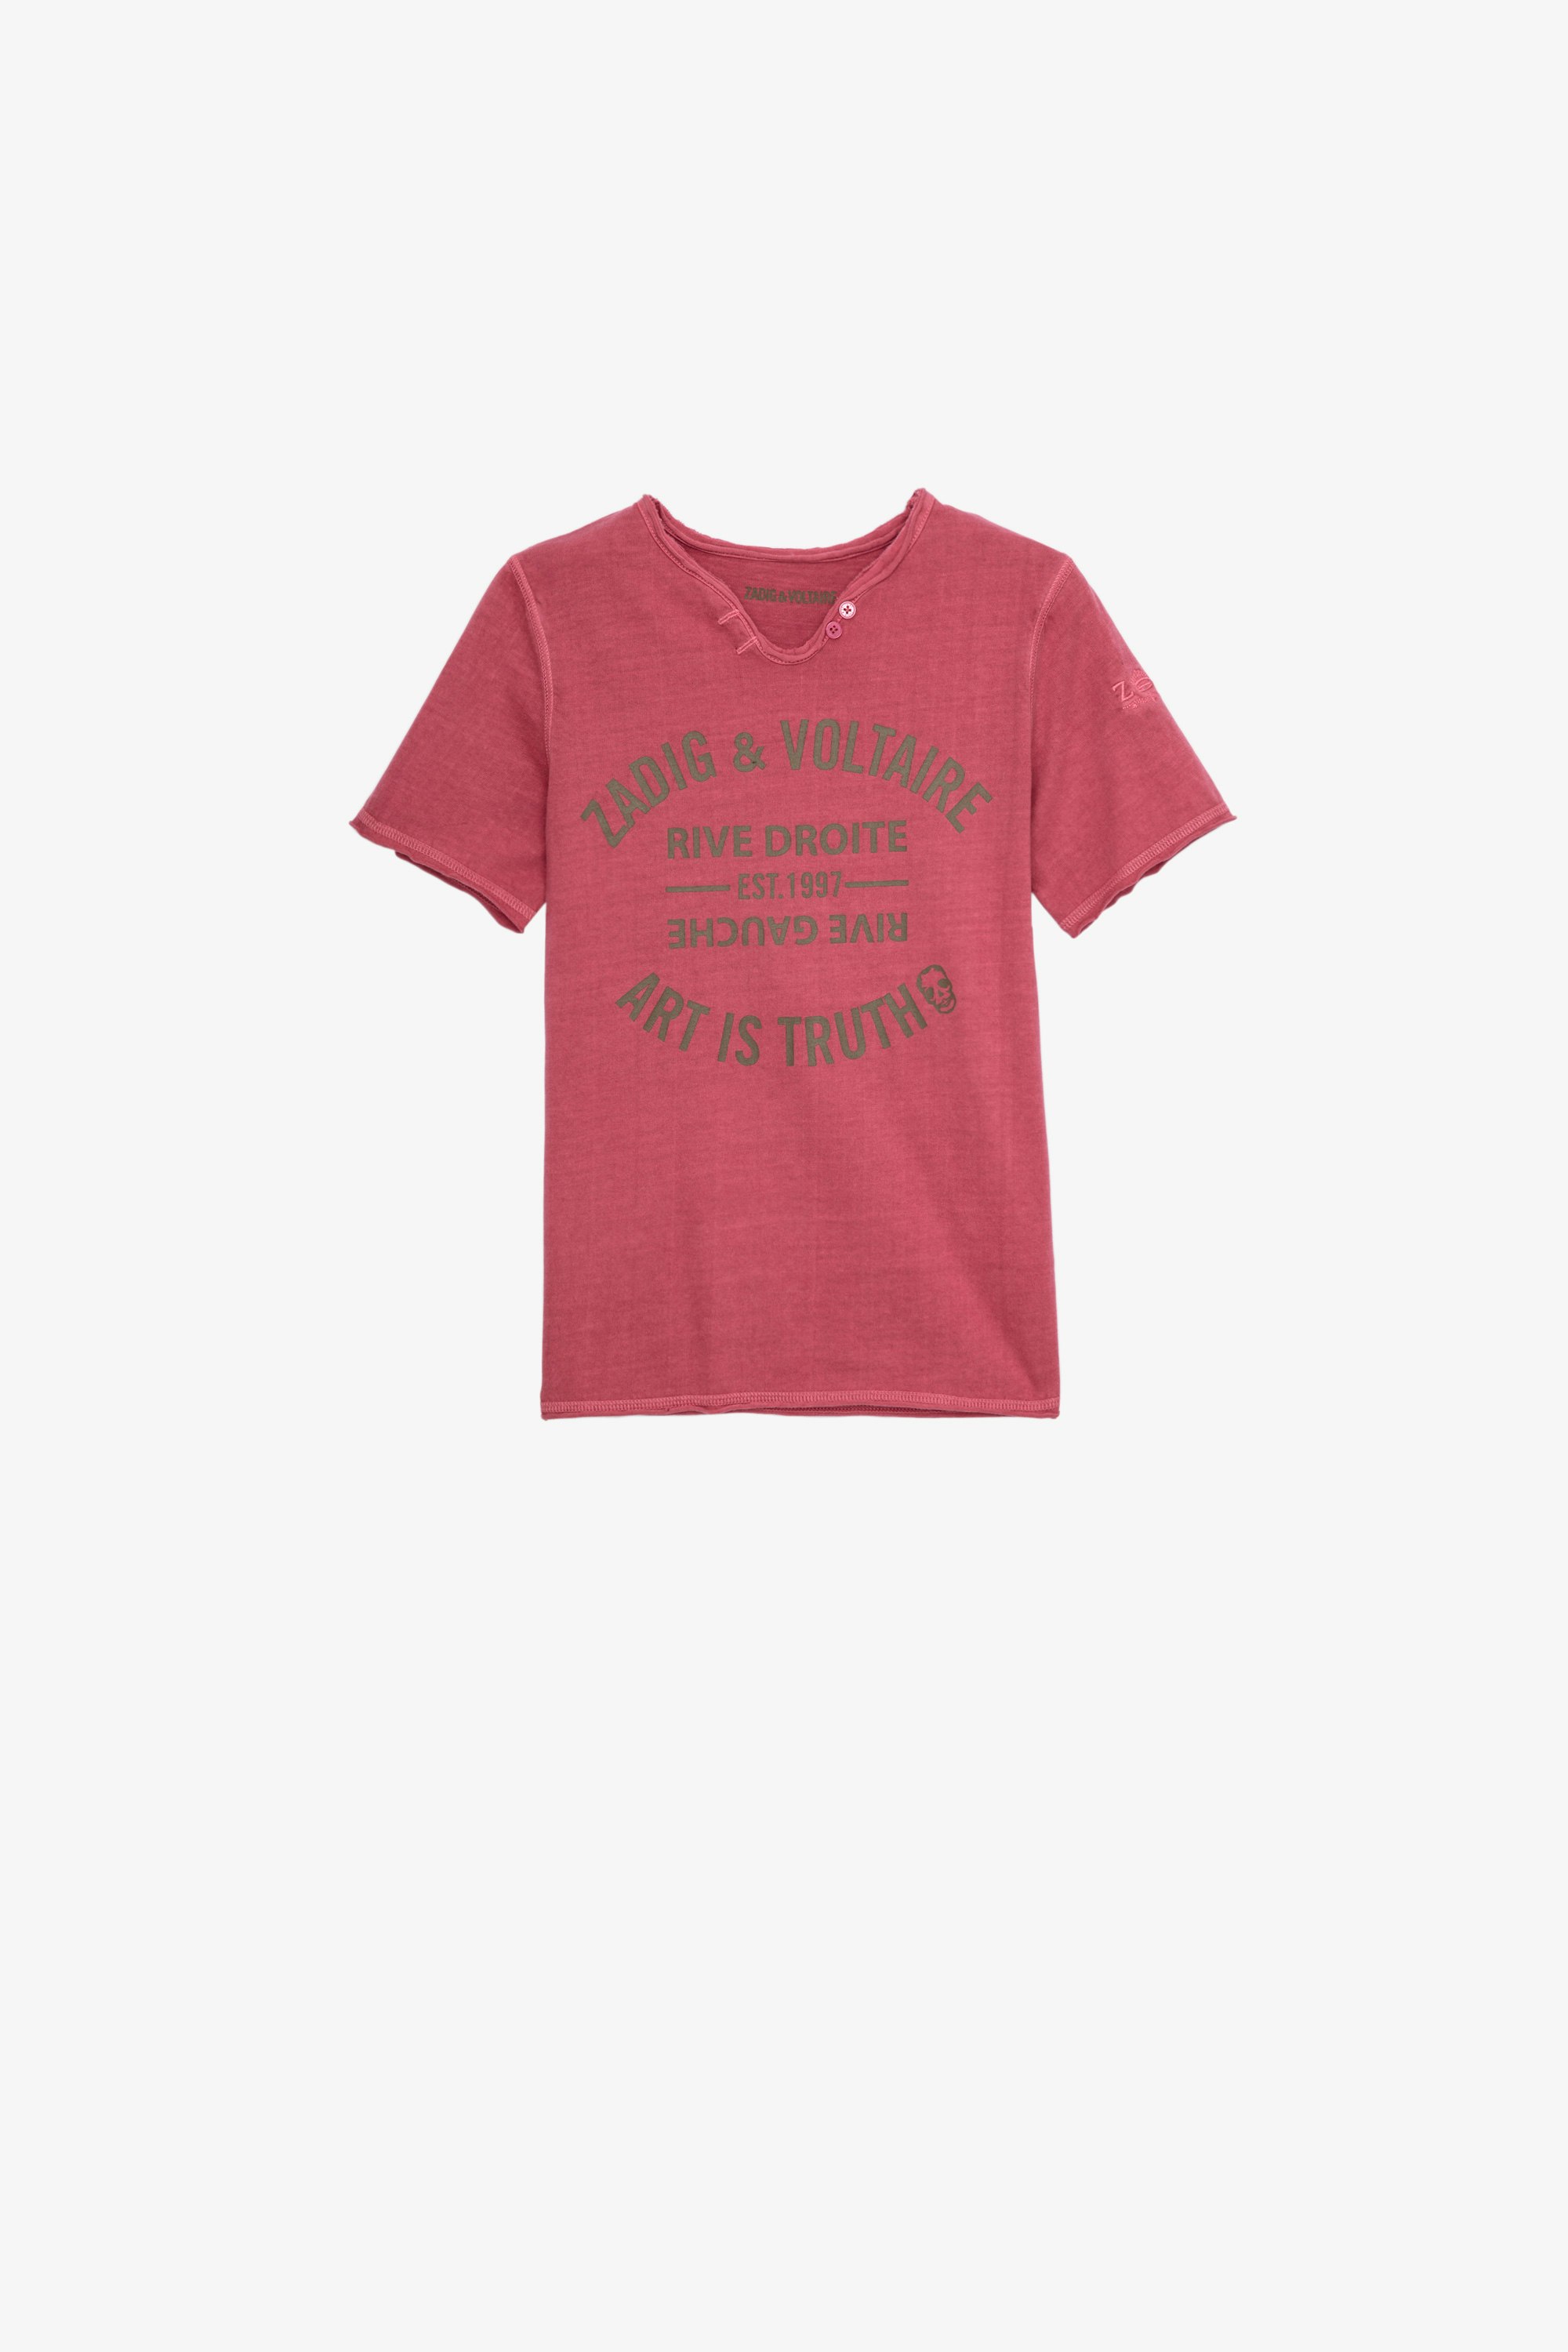 Kinder-T-Shirt Boxer Kinder-T-Shirt mit kurzen Ärmeln und Henley-Ausschnitt aus rosafarbener Baumwolle mit Wappenprint 